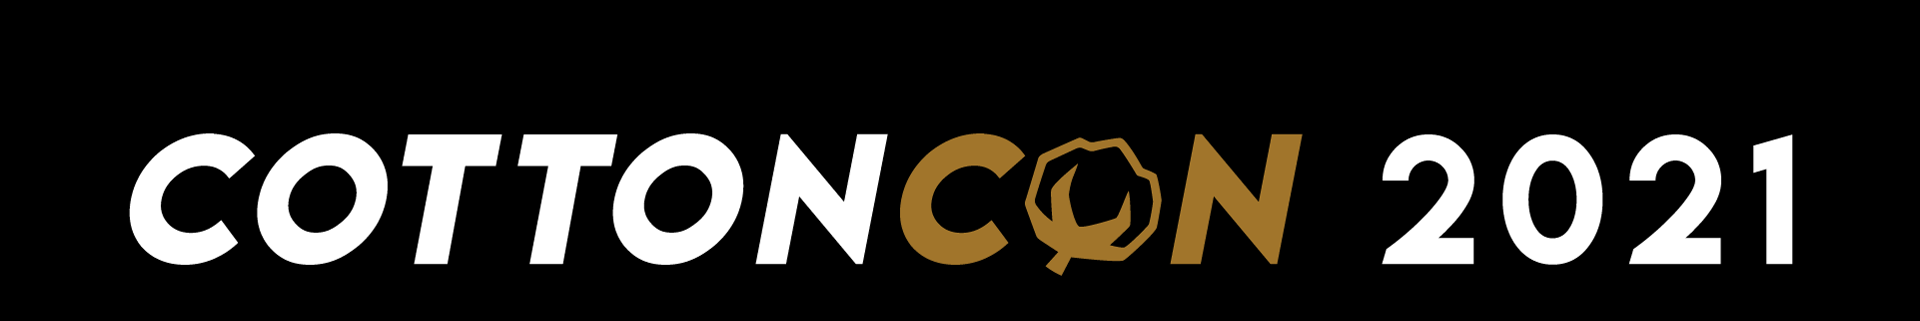 CottonCon_Logo_2021_WEB_LONG2.png